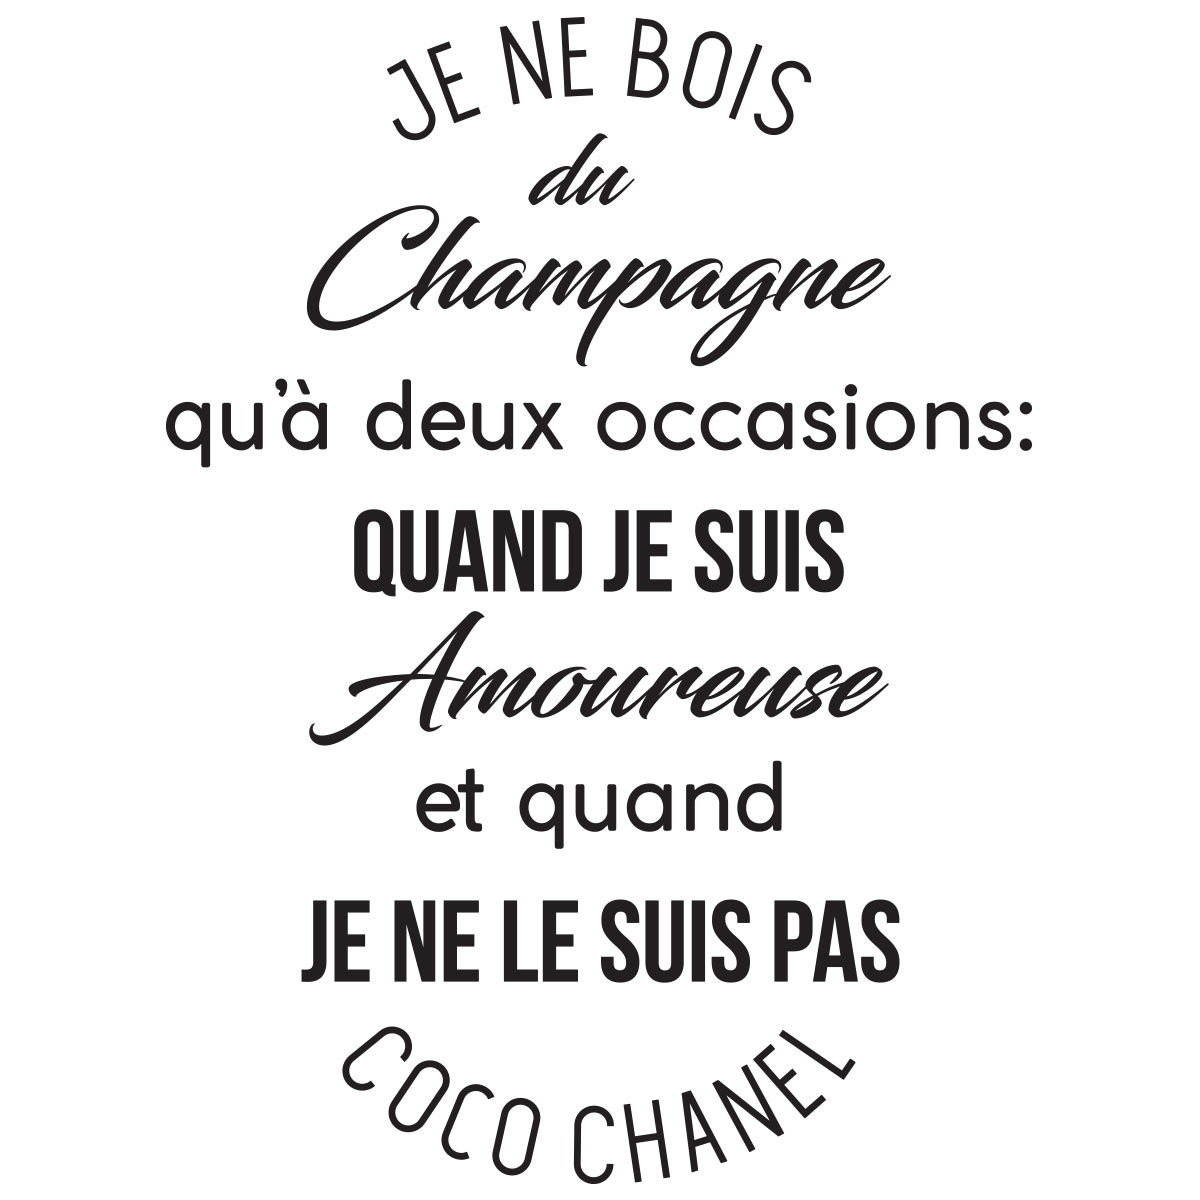 Wandtattoo Zitat Champagne Coco Chanel Wandtattoos Zitat Wandtattoo Franzosisch Ambiance Sticker